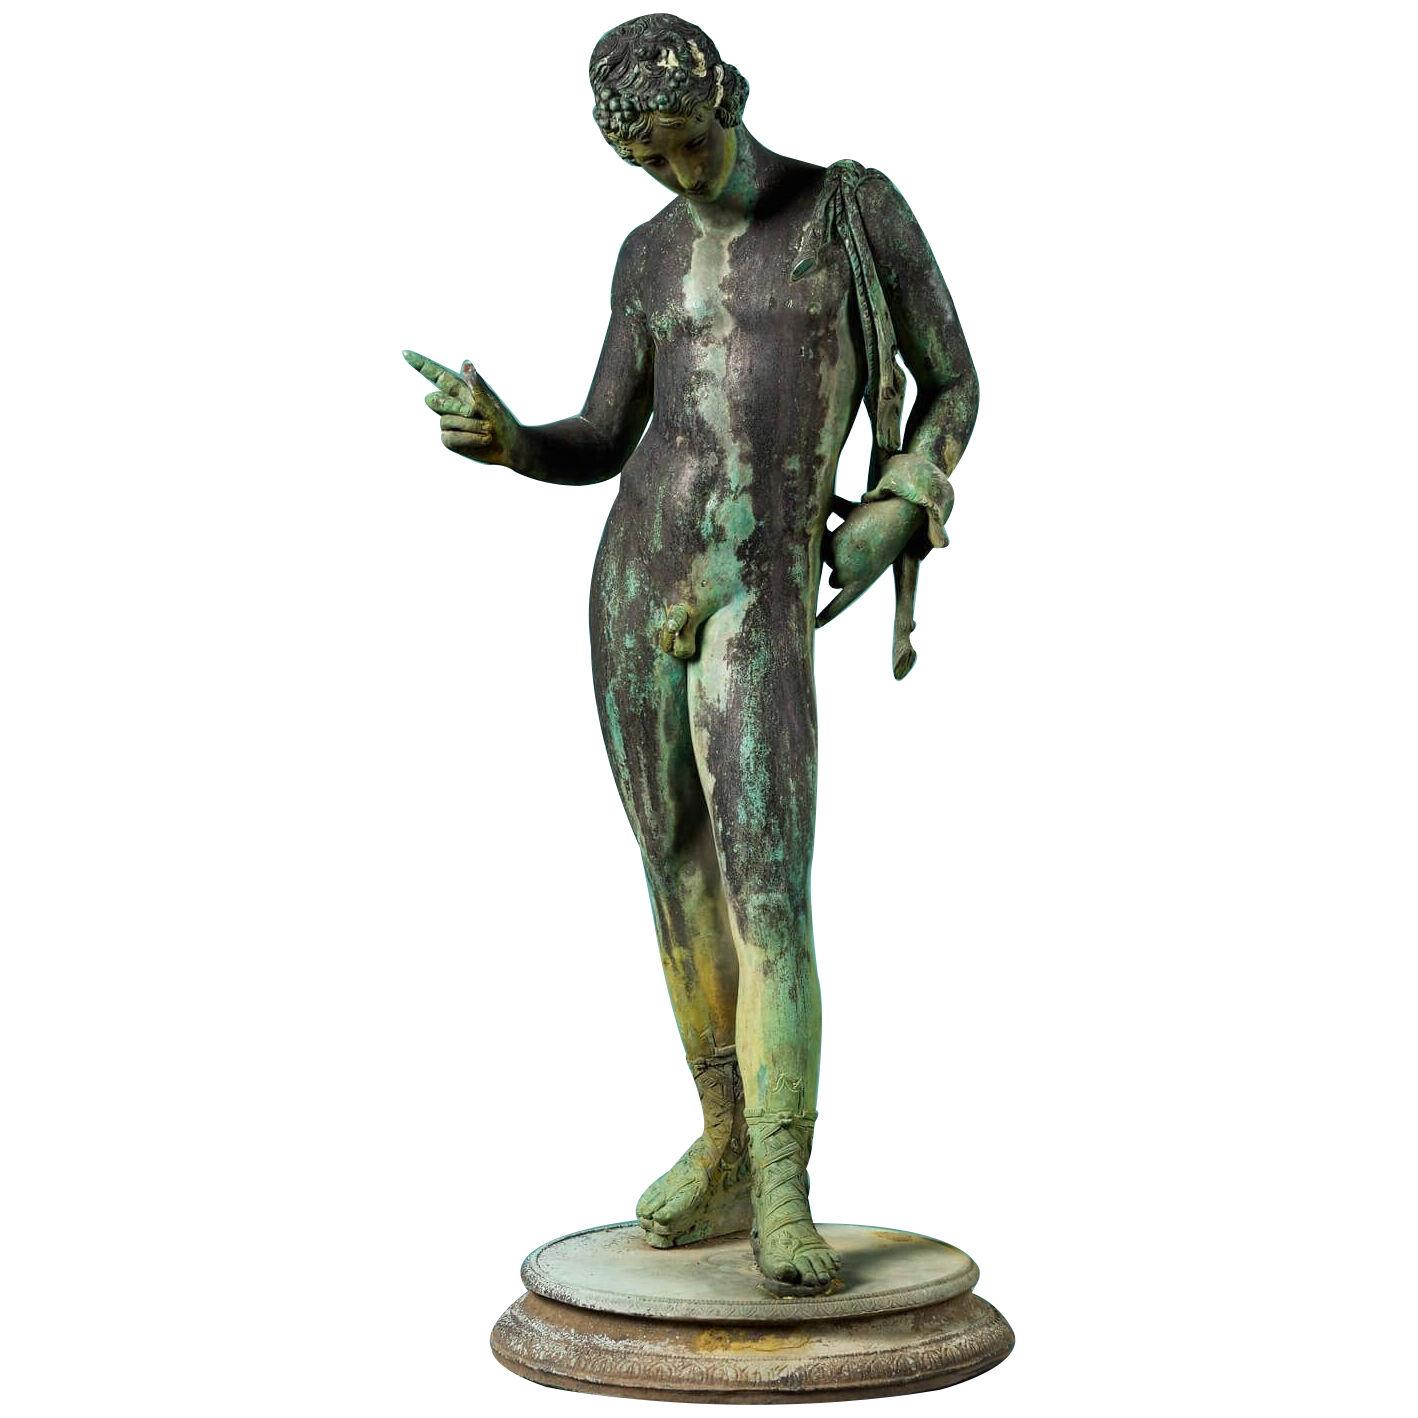 Antique Bronze Statue of Narcissus